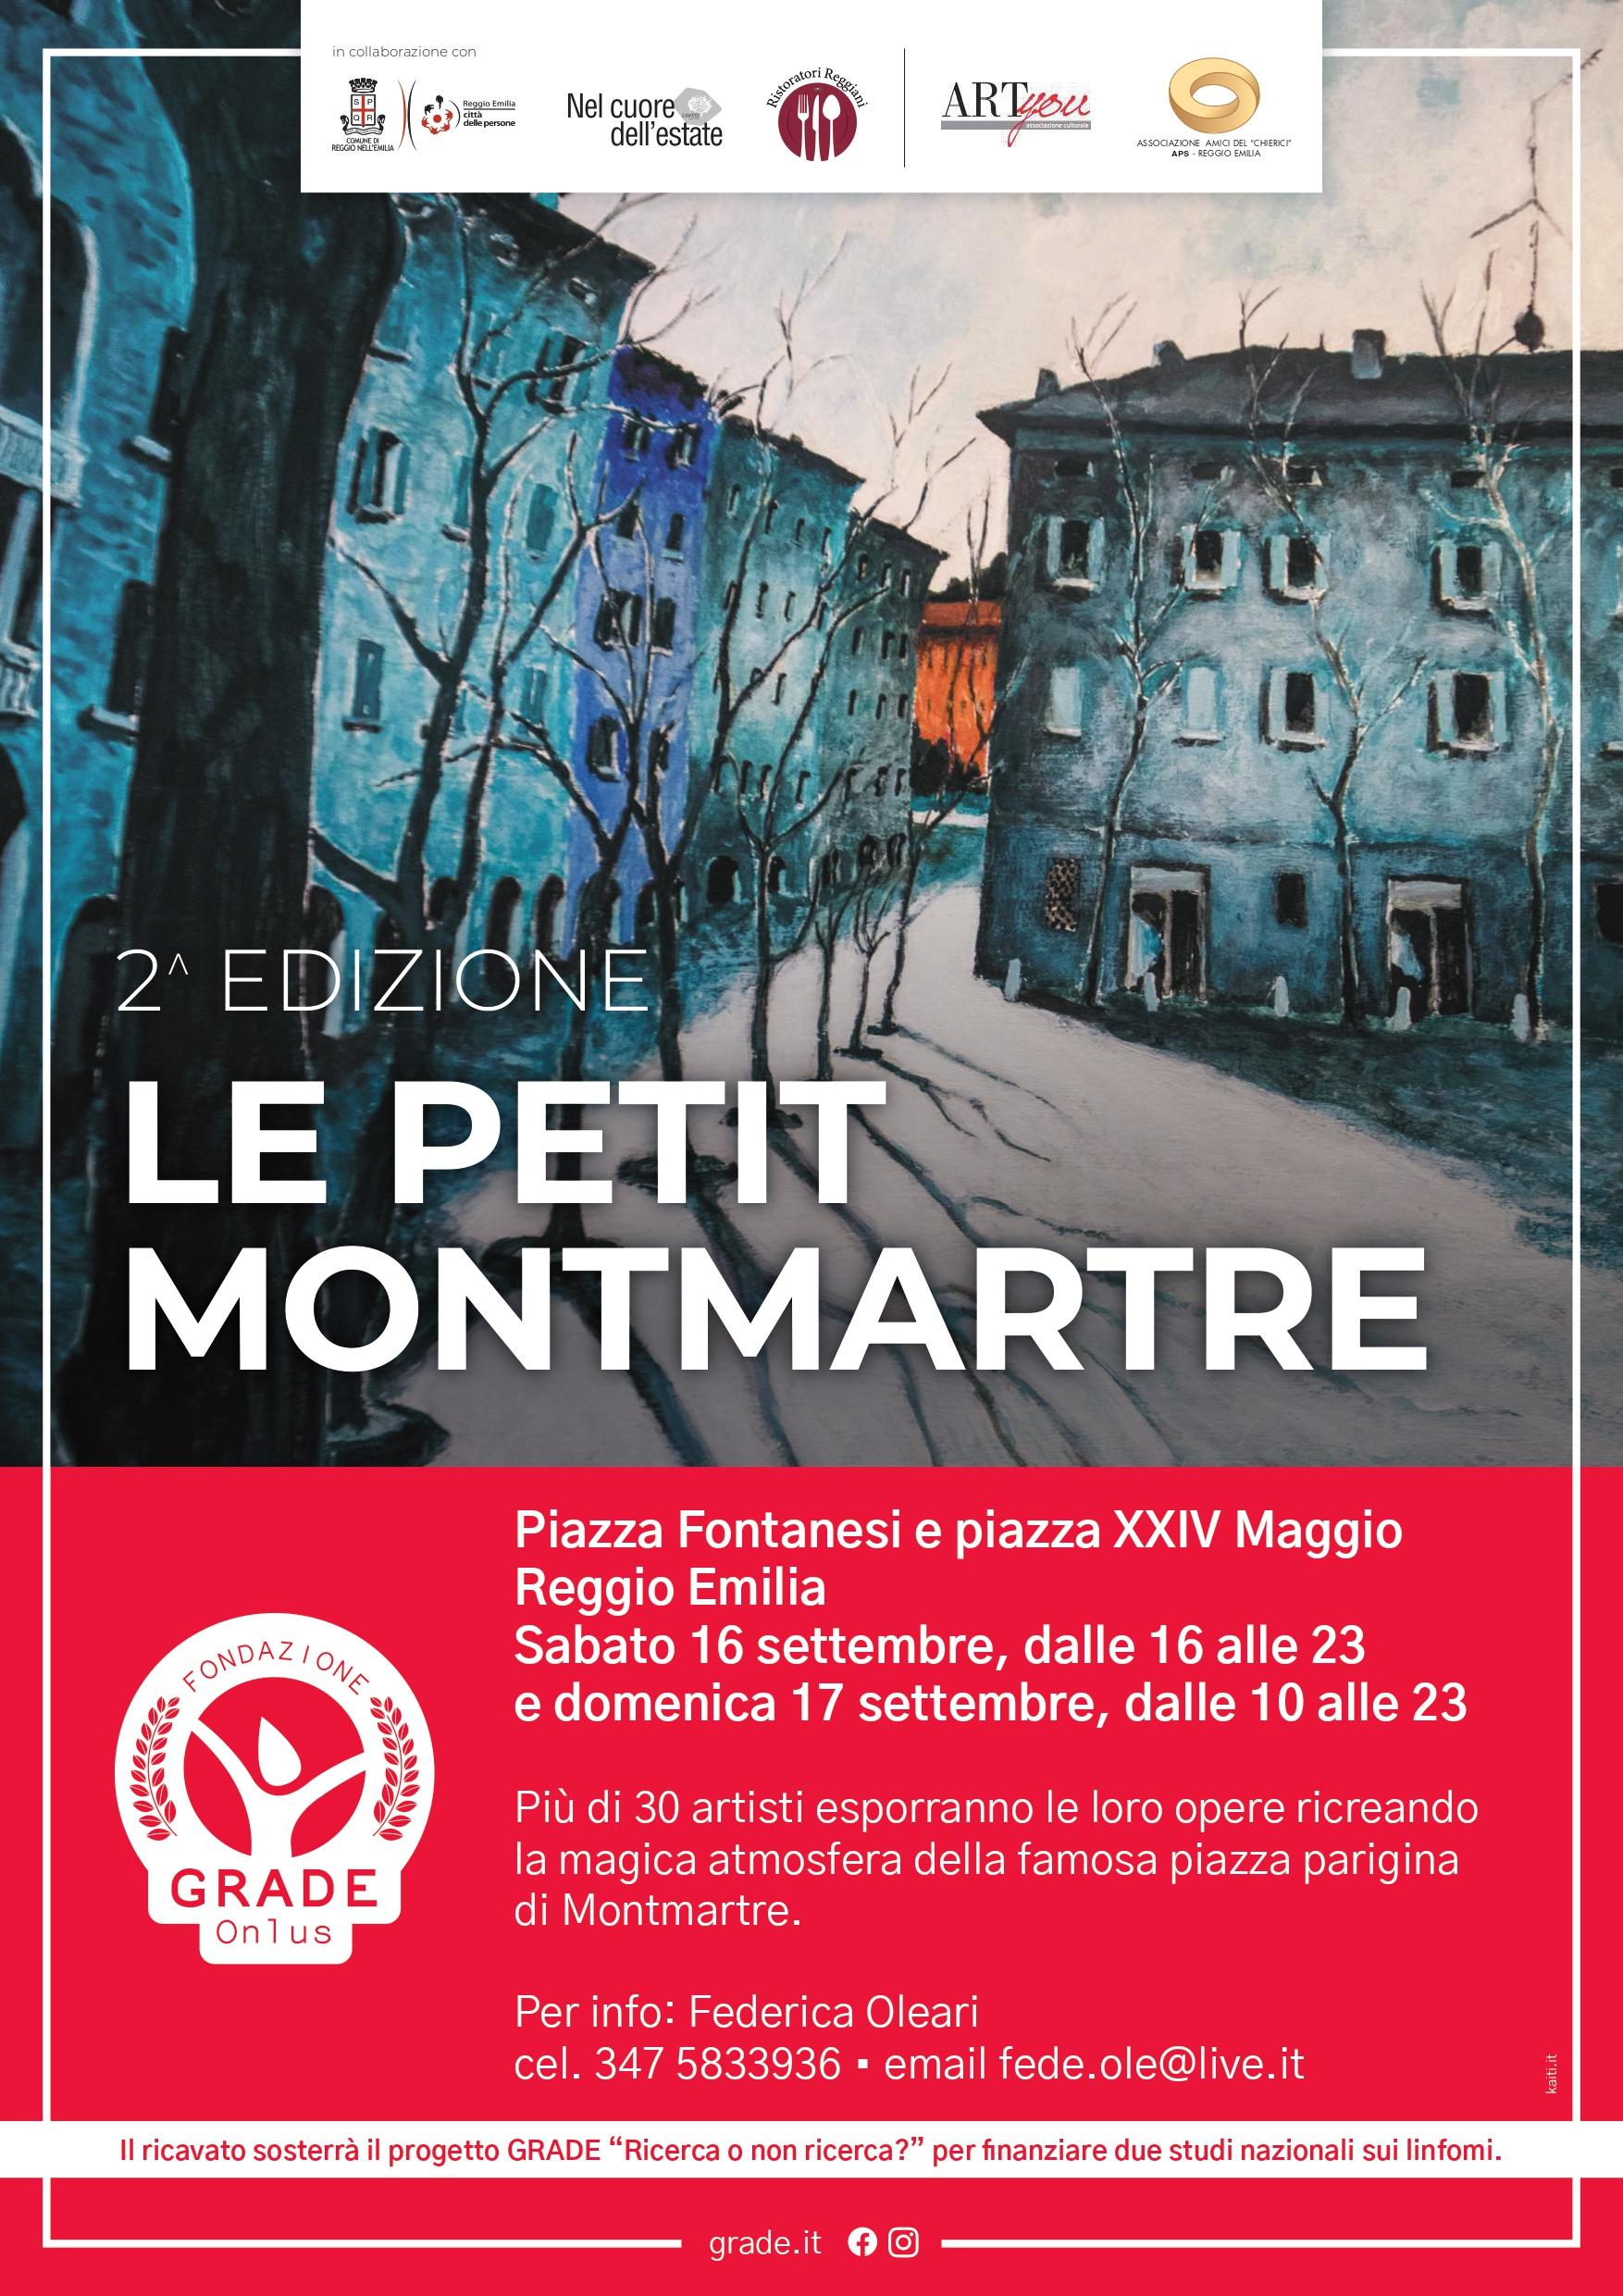 Sarò parte dell' evento artistico: Petit Montmartre il 16 e 17 settembre a Reggio Emilia